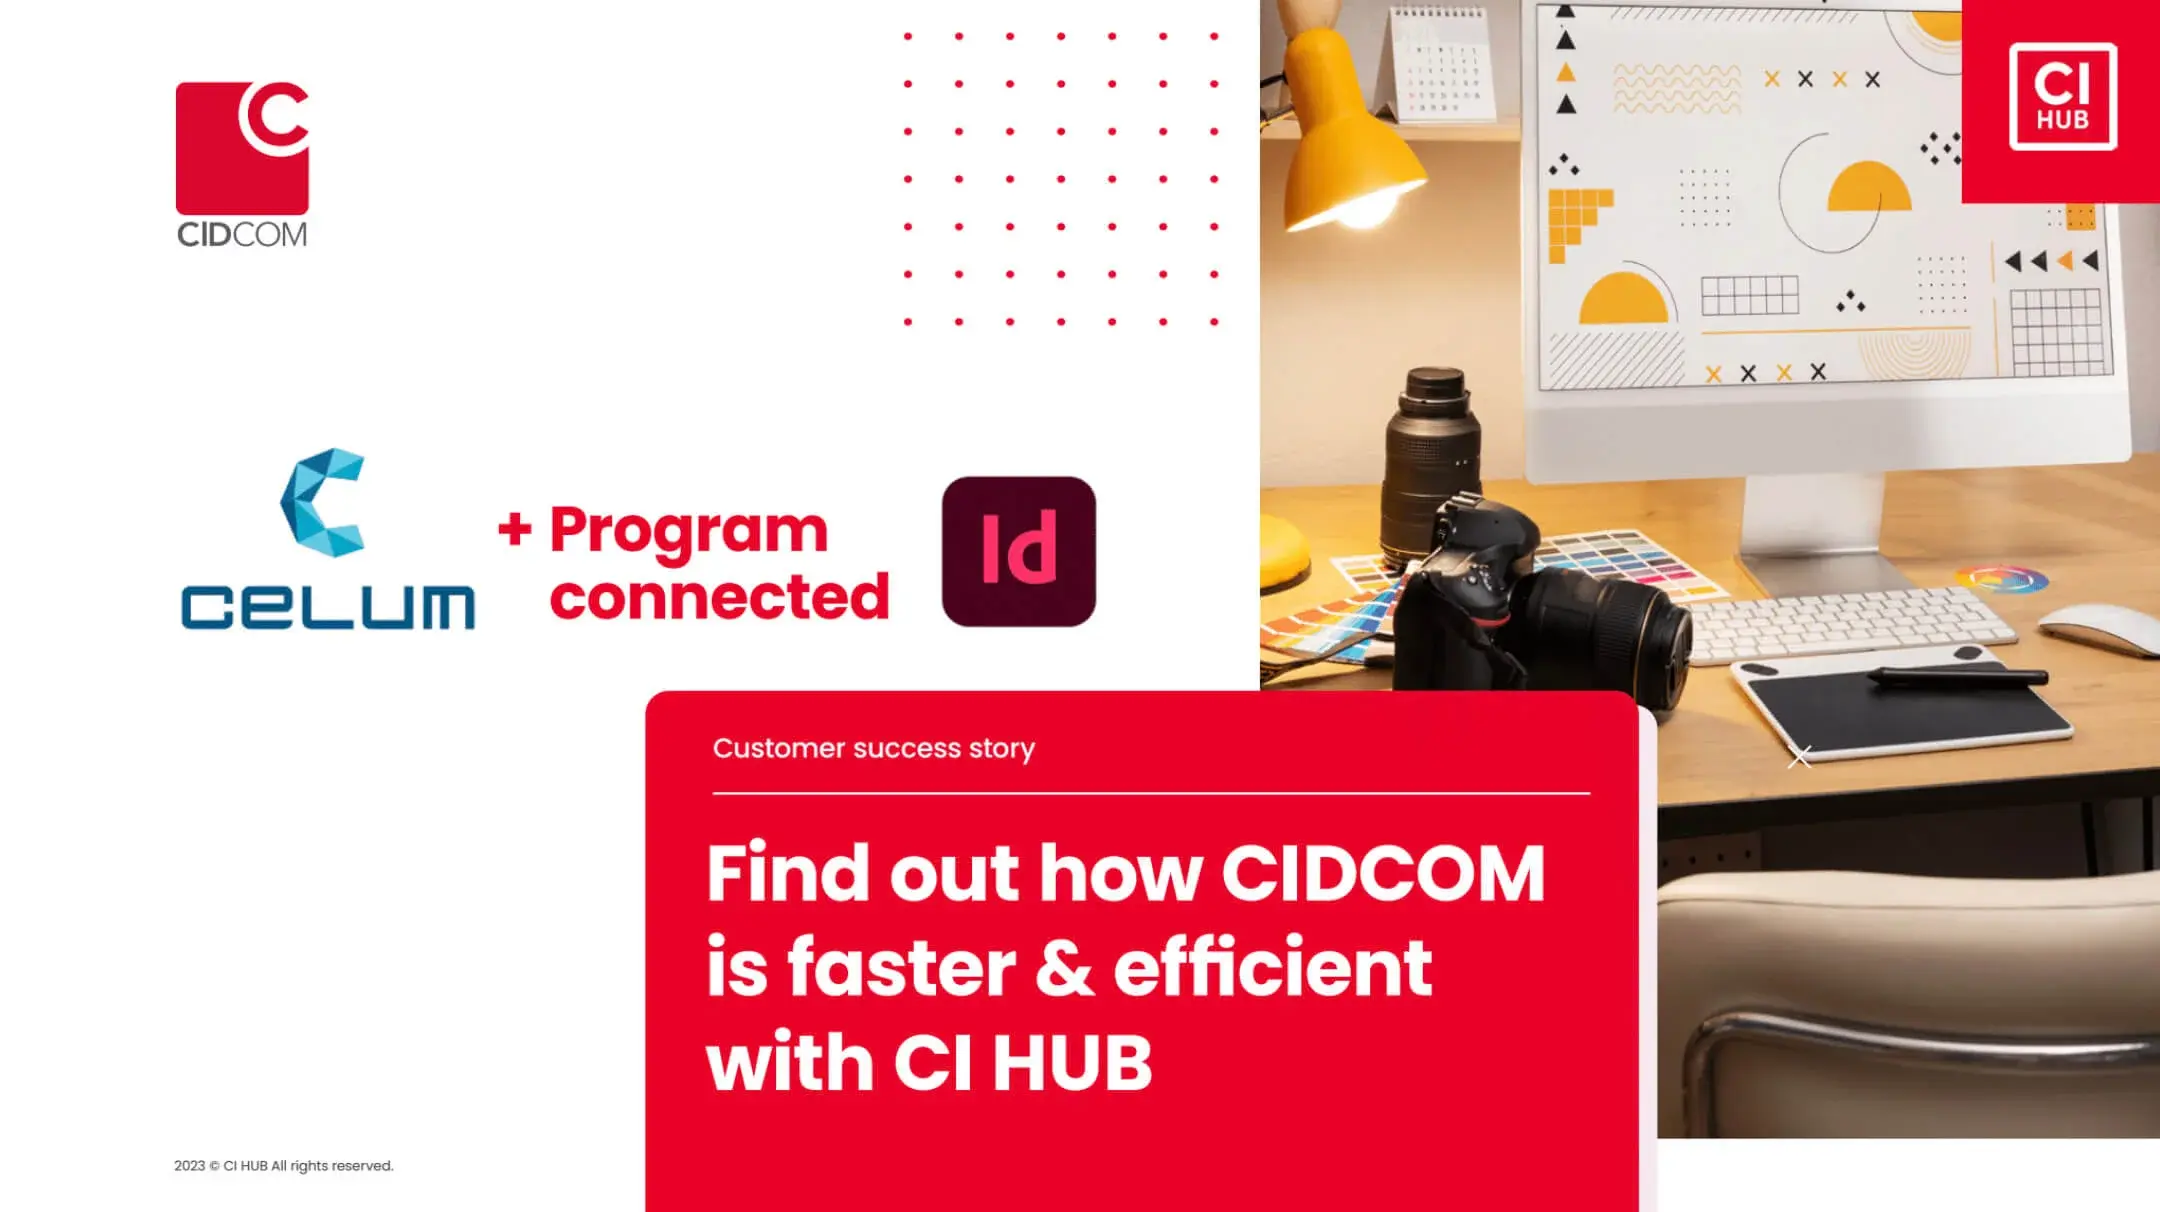 cidcom-success-story-image